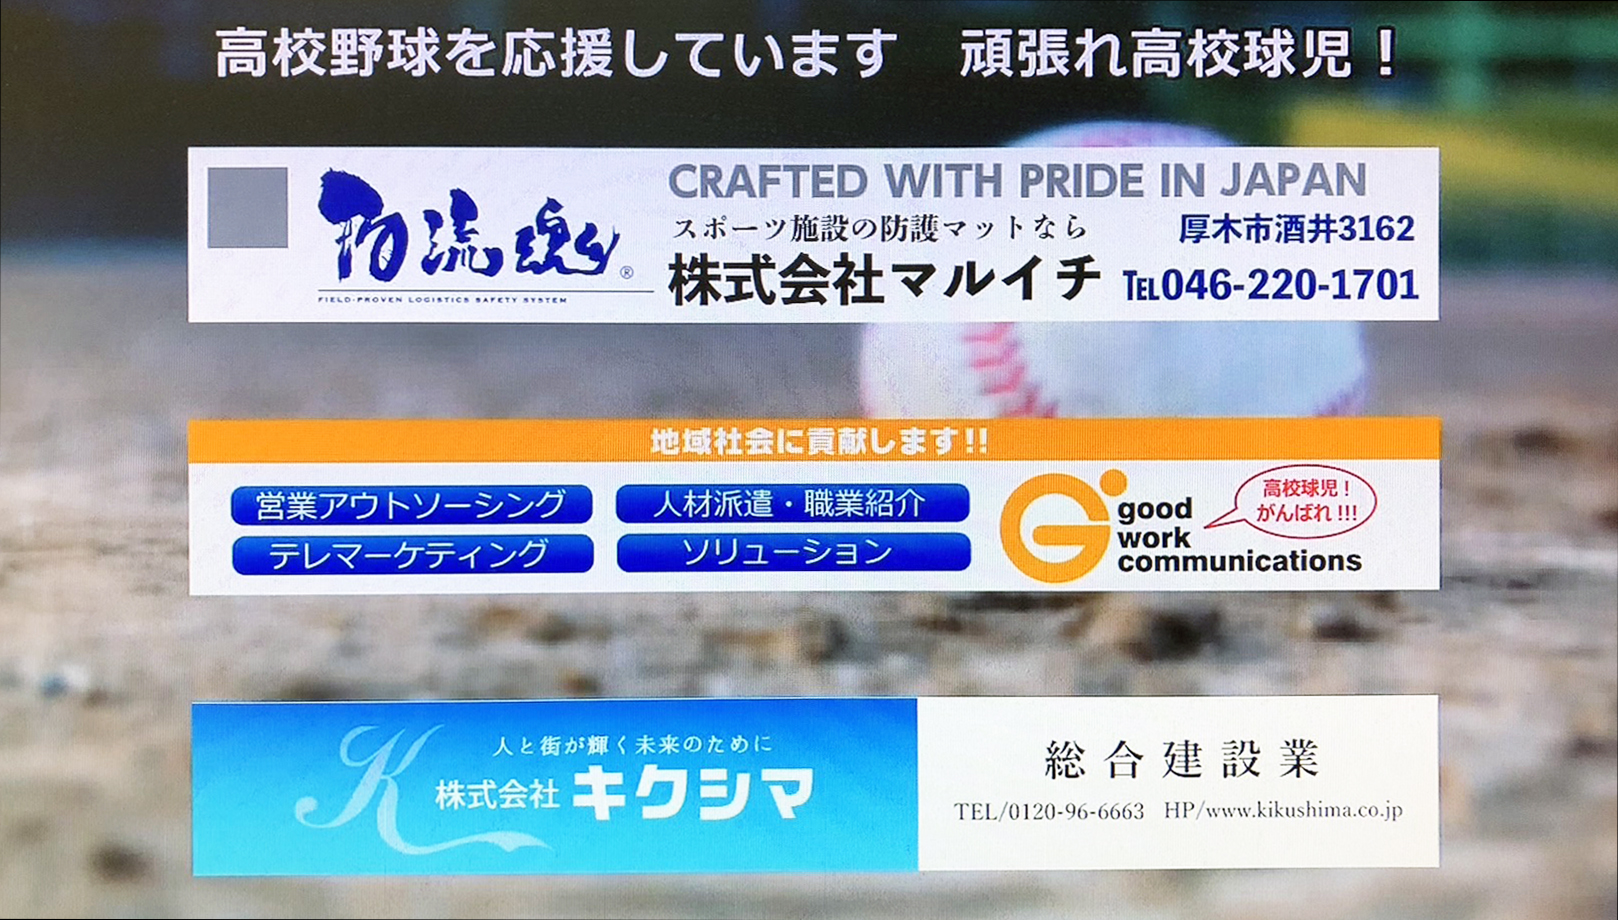 高校野球選手権神奈川大会中継の際に流れたバナー広告